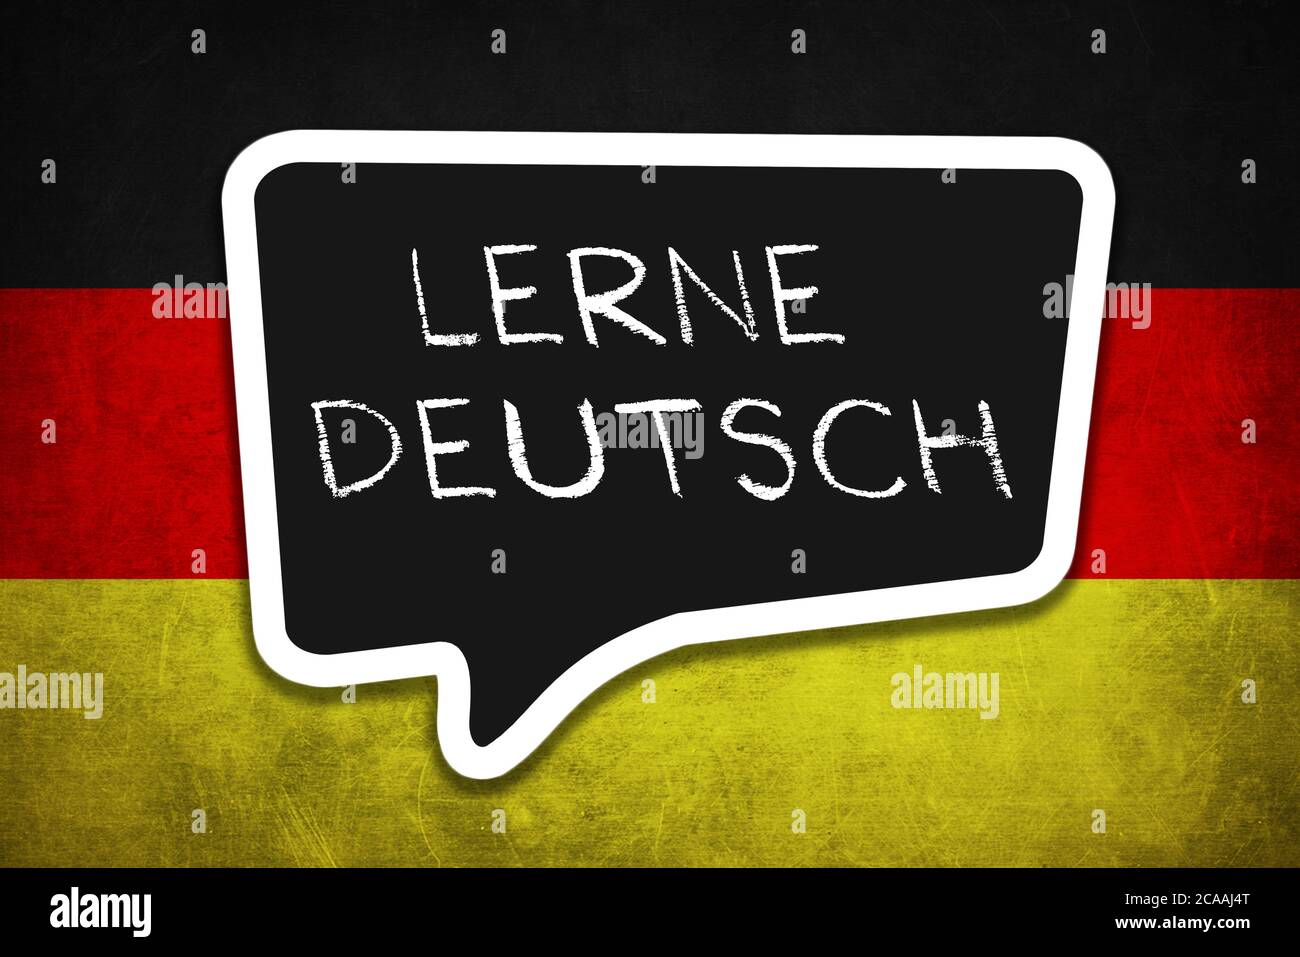 Lerne Deutsch - German Language Stock Photo